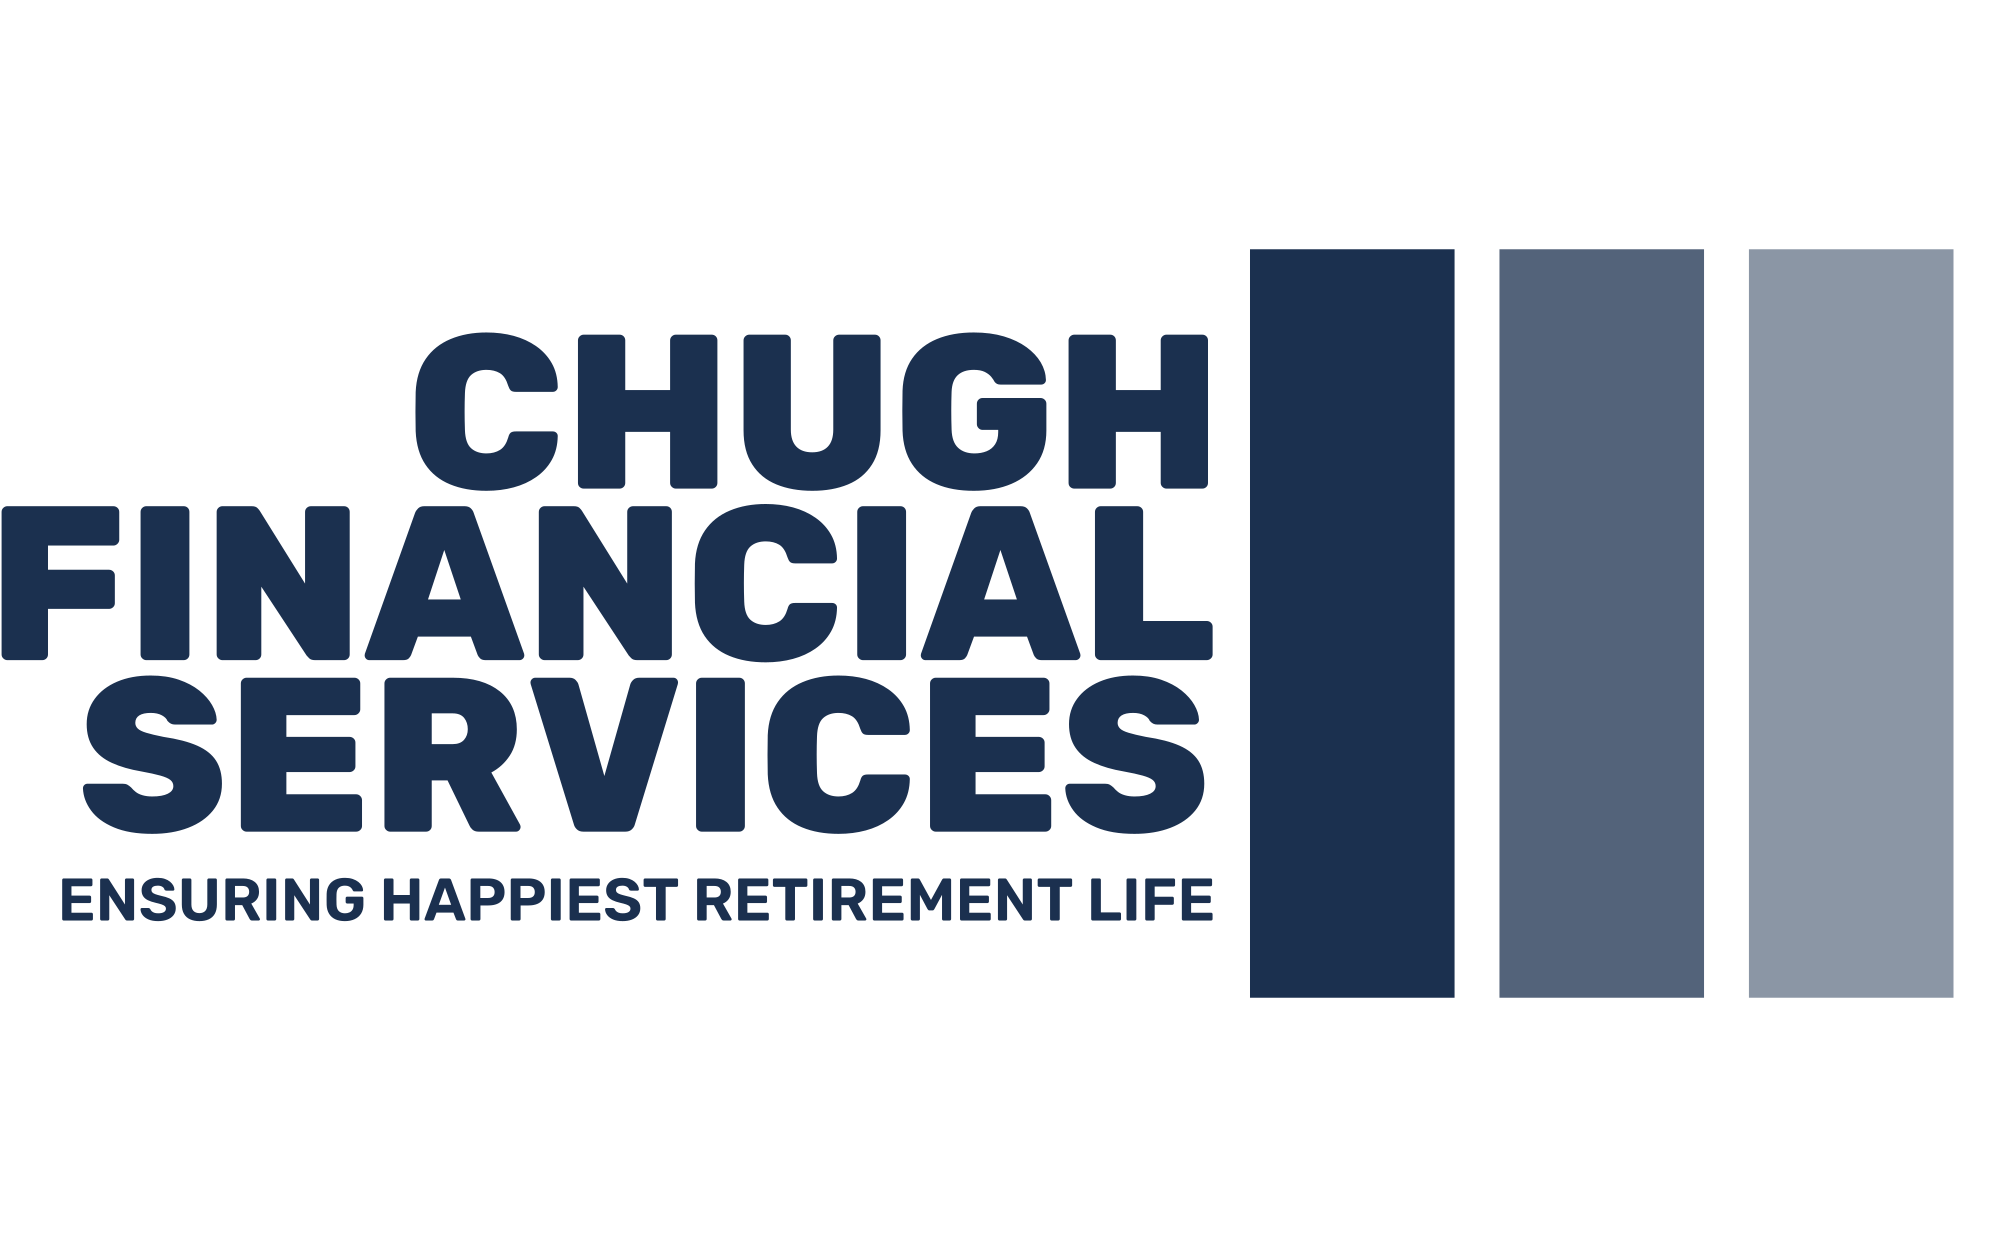 Chugh Financial Services